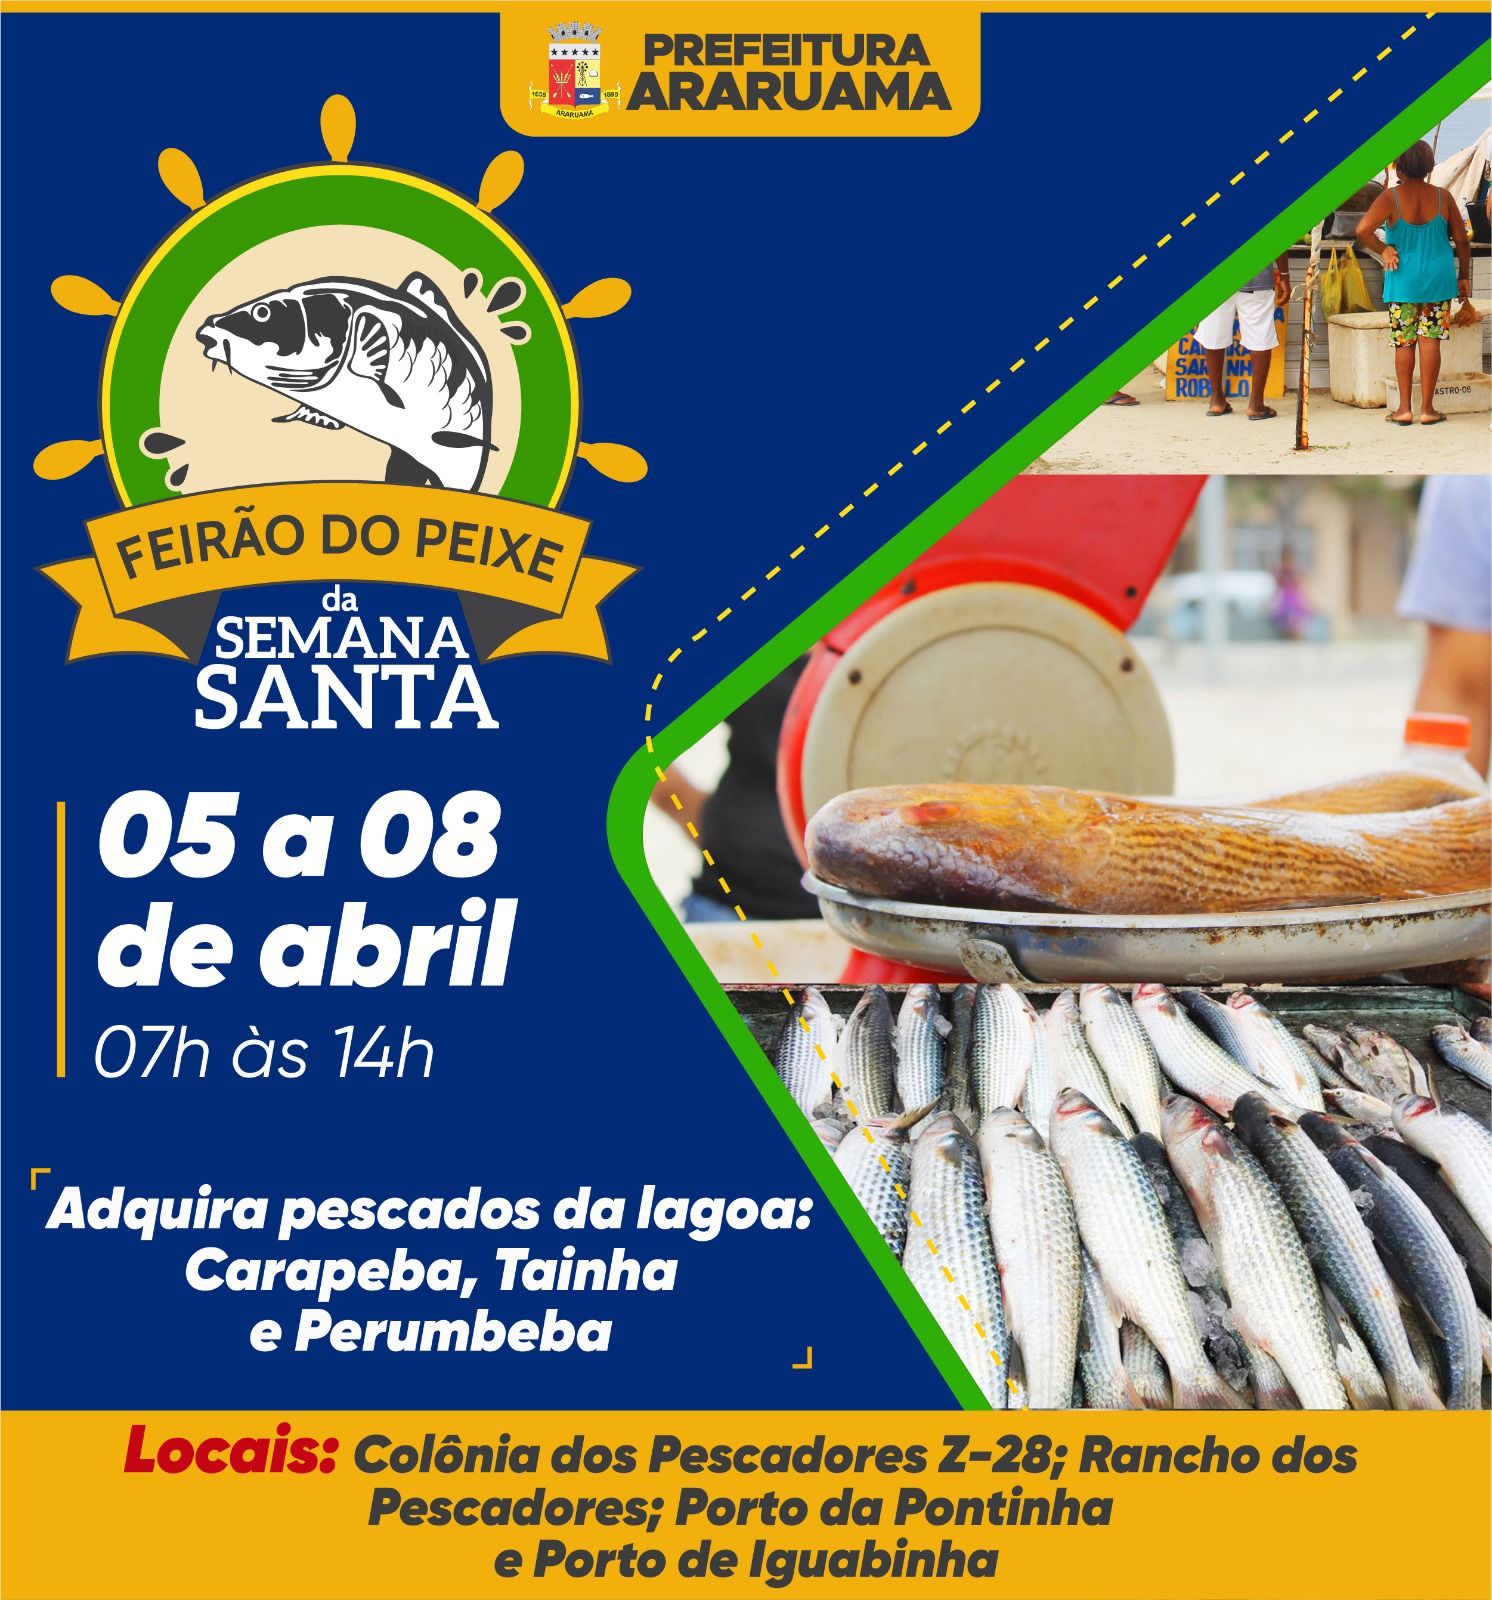 Prefeitura vai realizar mais uma edição do “Feirão do Peixe da Semana Santa” em Araruama